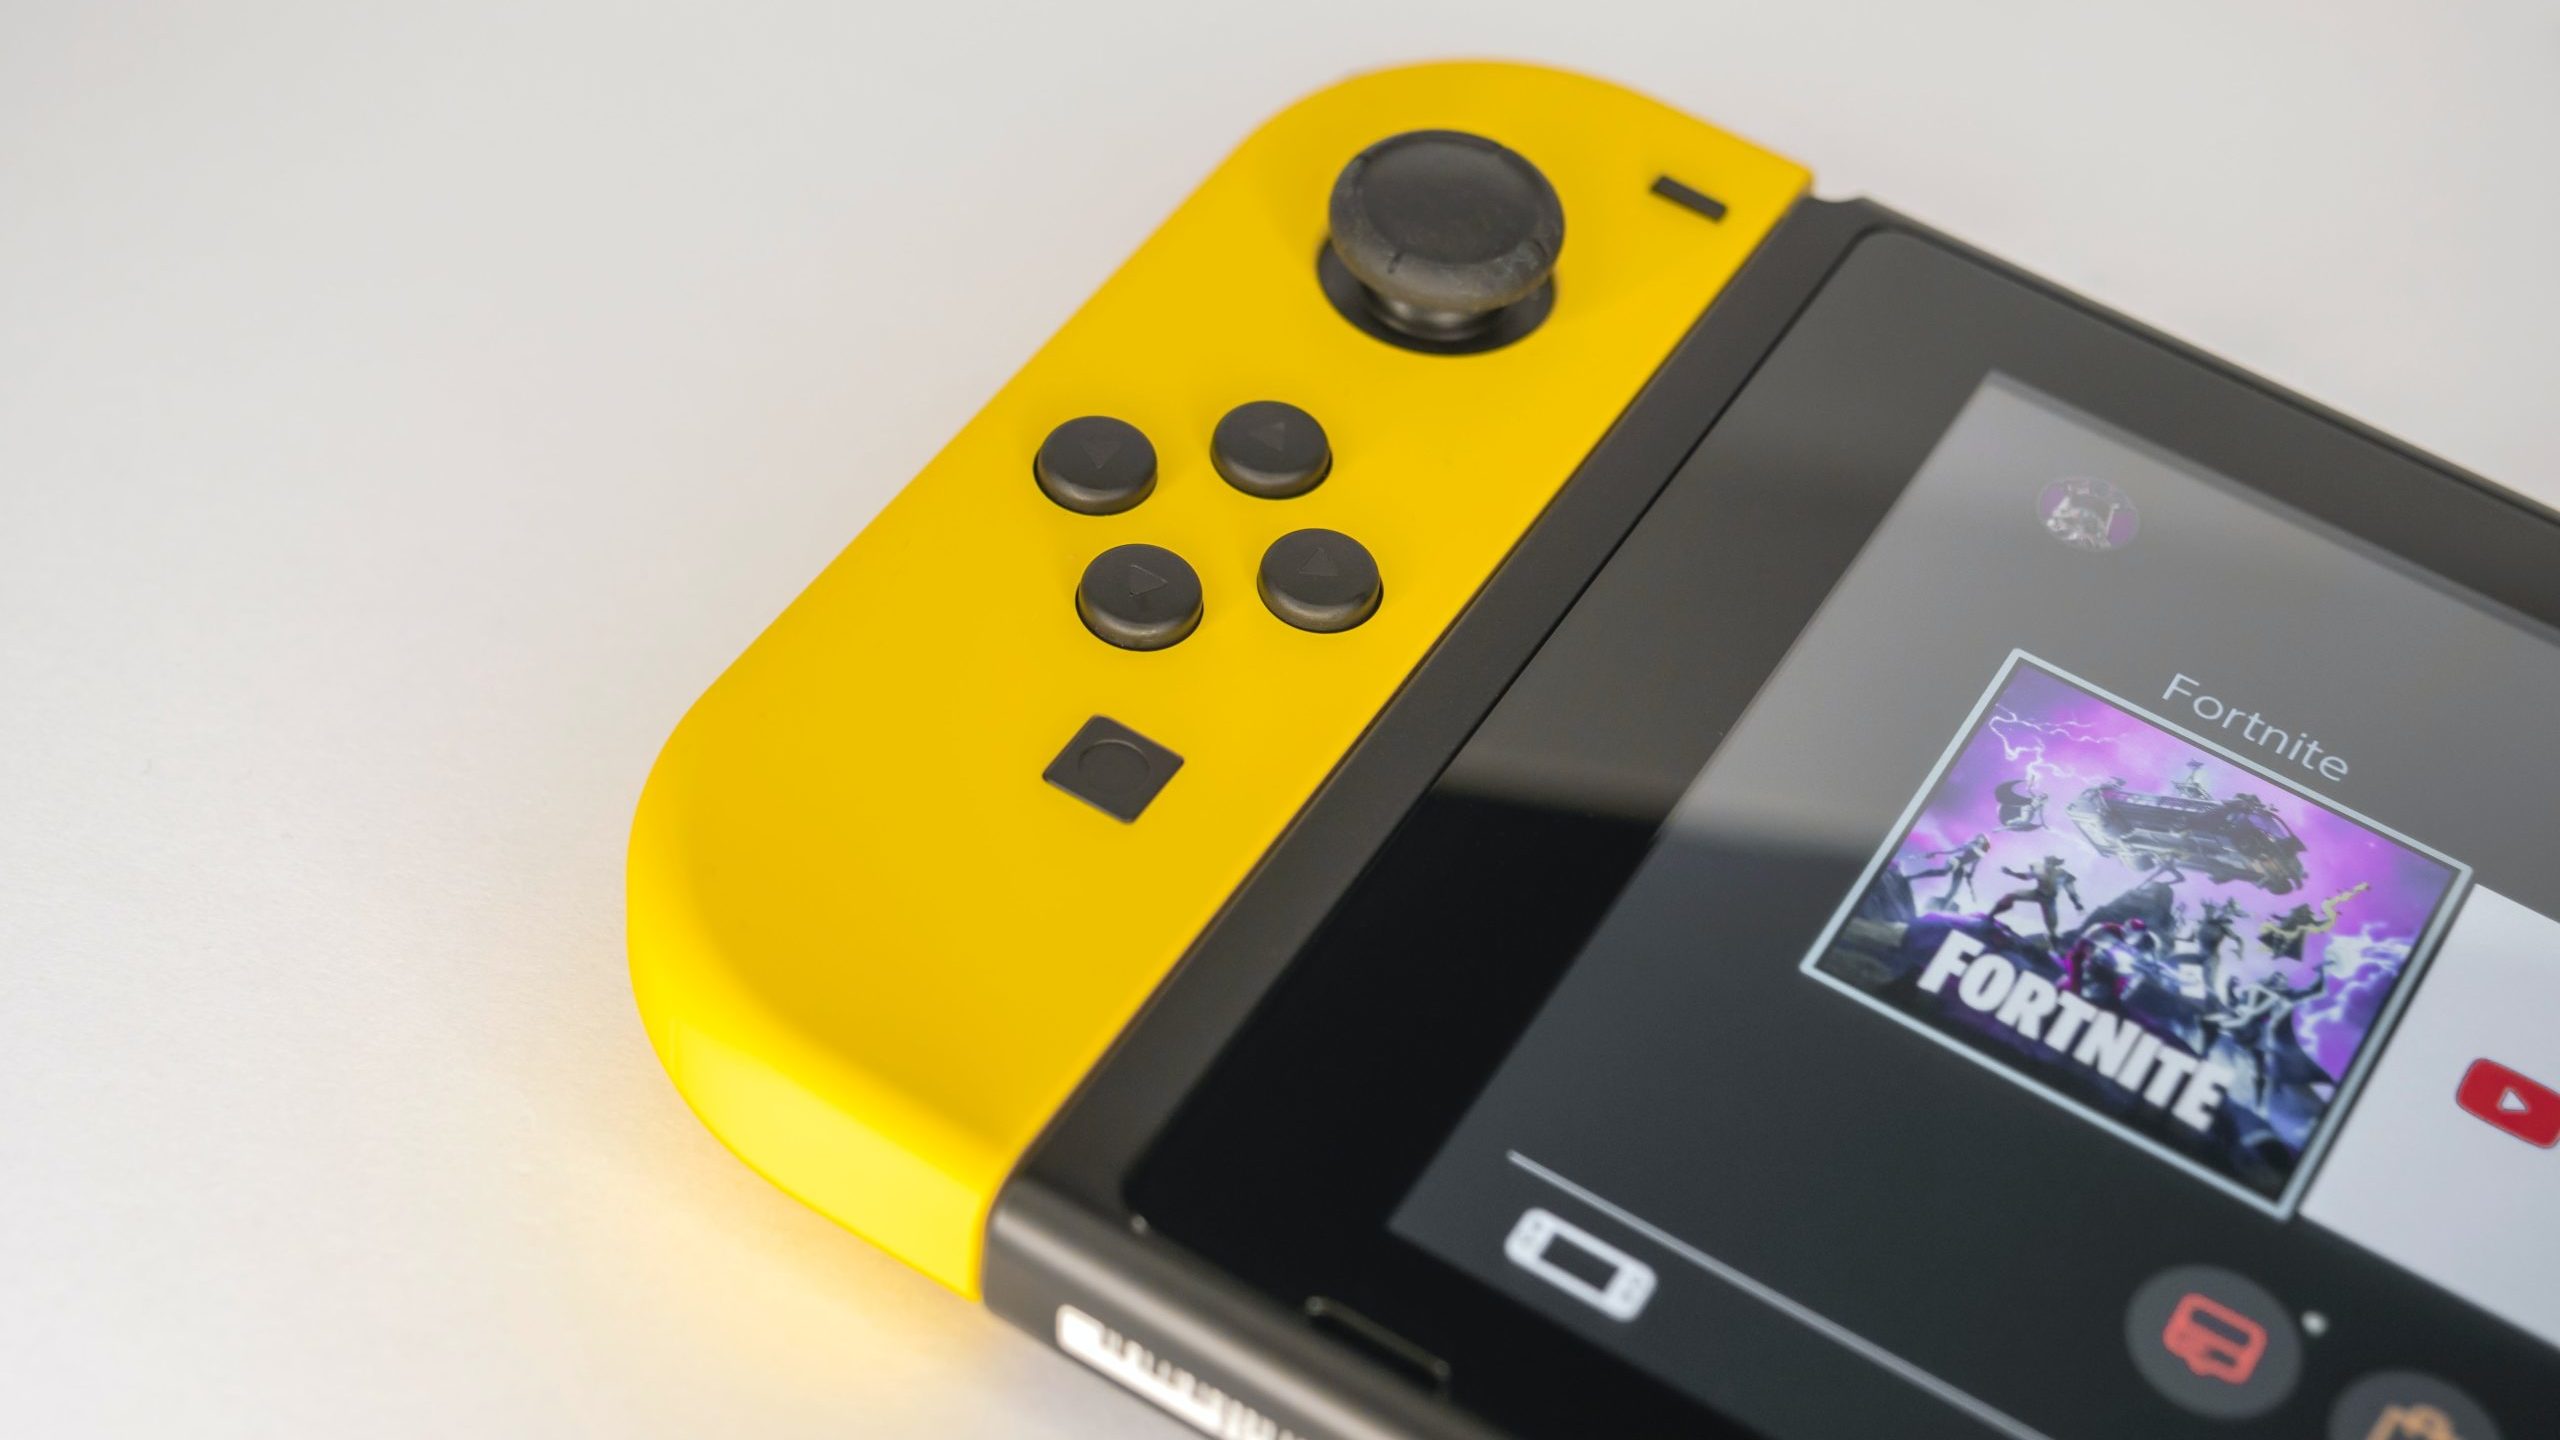 Nintendo Switch Oled - Novo - Desbloqueado - Cartão De 512gb + Jogos